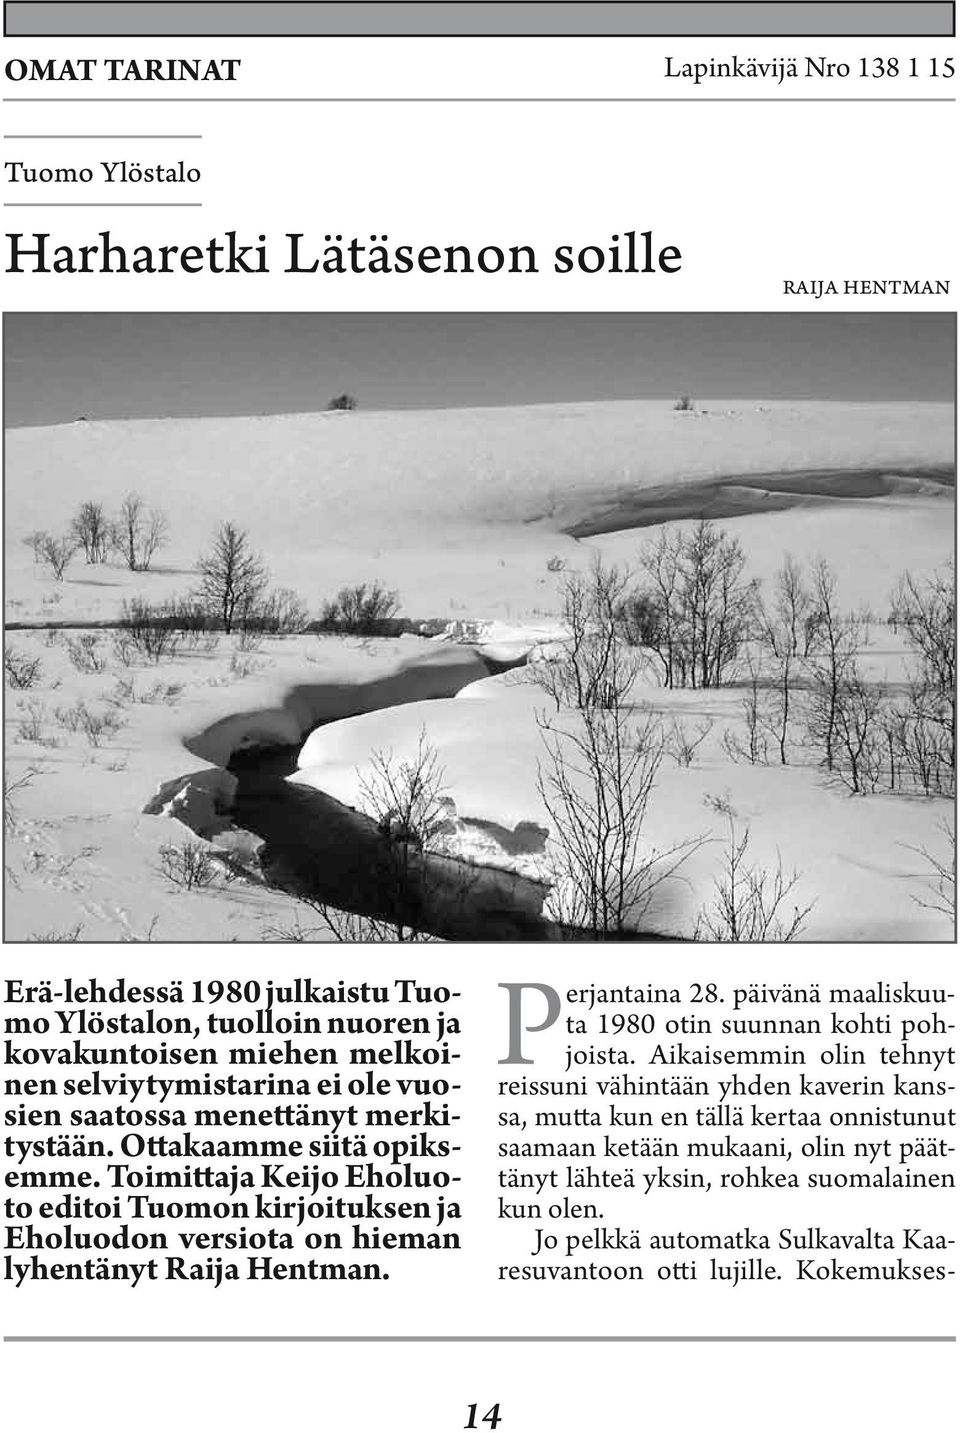 Toimittaja Keijo Eholuoto editoi Tuomon kirjoituksen ja Eholuodon versiota on hieman lyhentänyt Raija Hentman. Perjantaina 28. päivänä maaliskuuta 1980 otin suunnan kohti pohjoista.